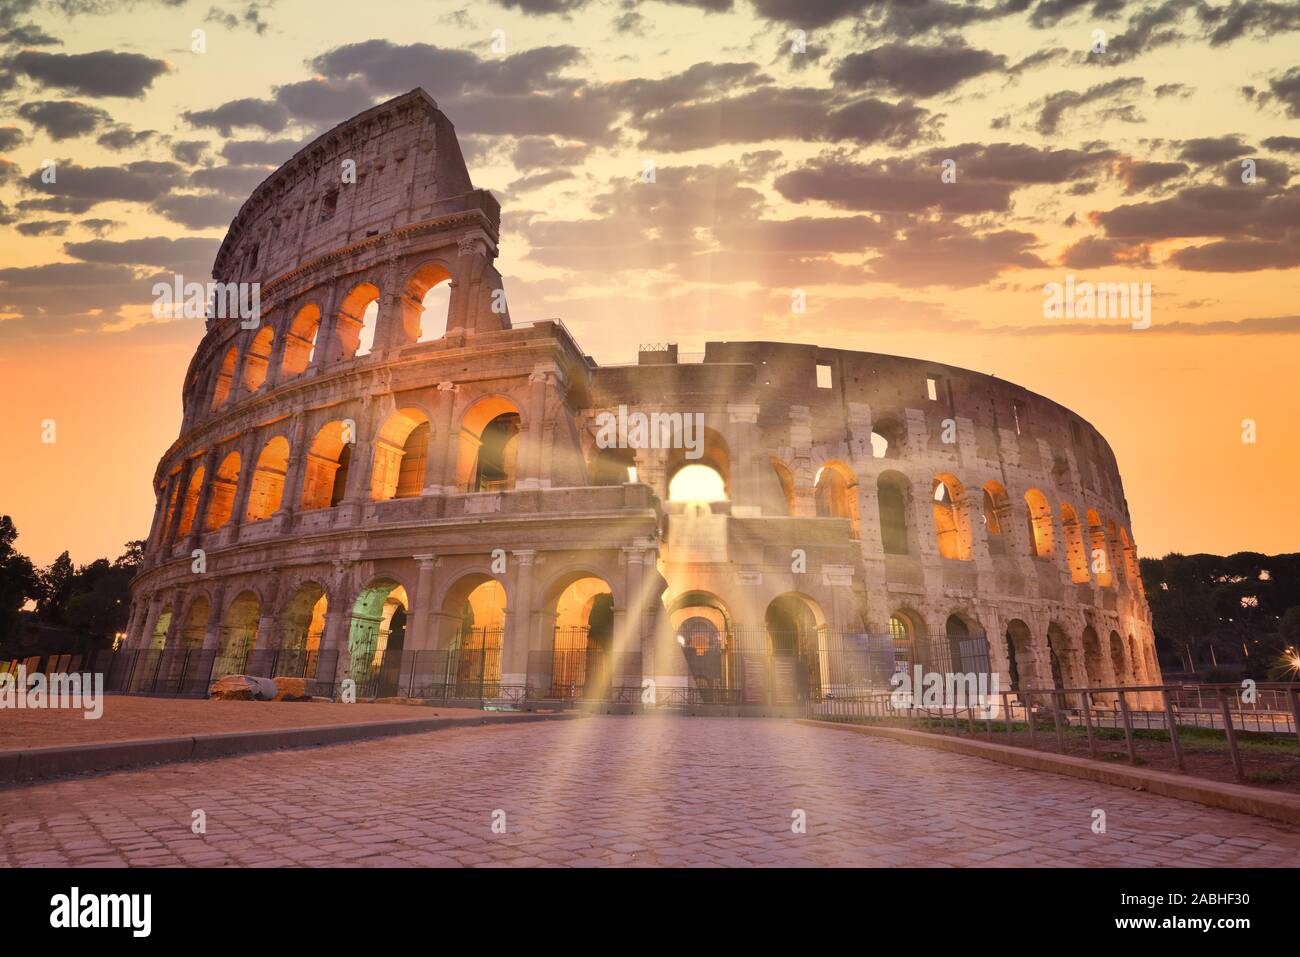 Vue de nuit sur le Colisée à Rome, Italie. L'architecture de Rome et de repère. Colisée de Rome est l'une des principales attractions de Rome et l'Italie Banque D'Images